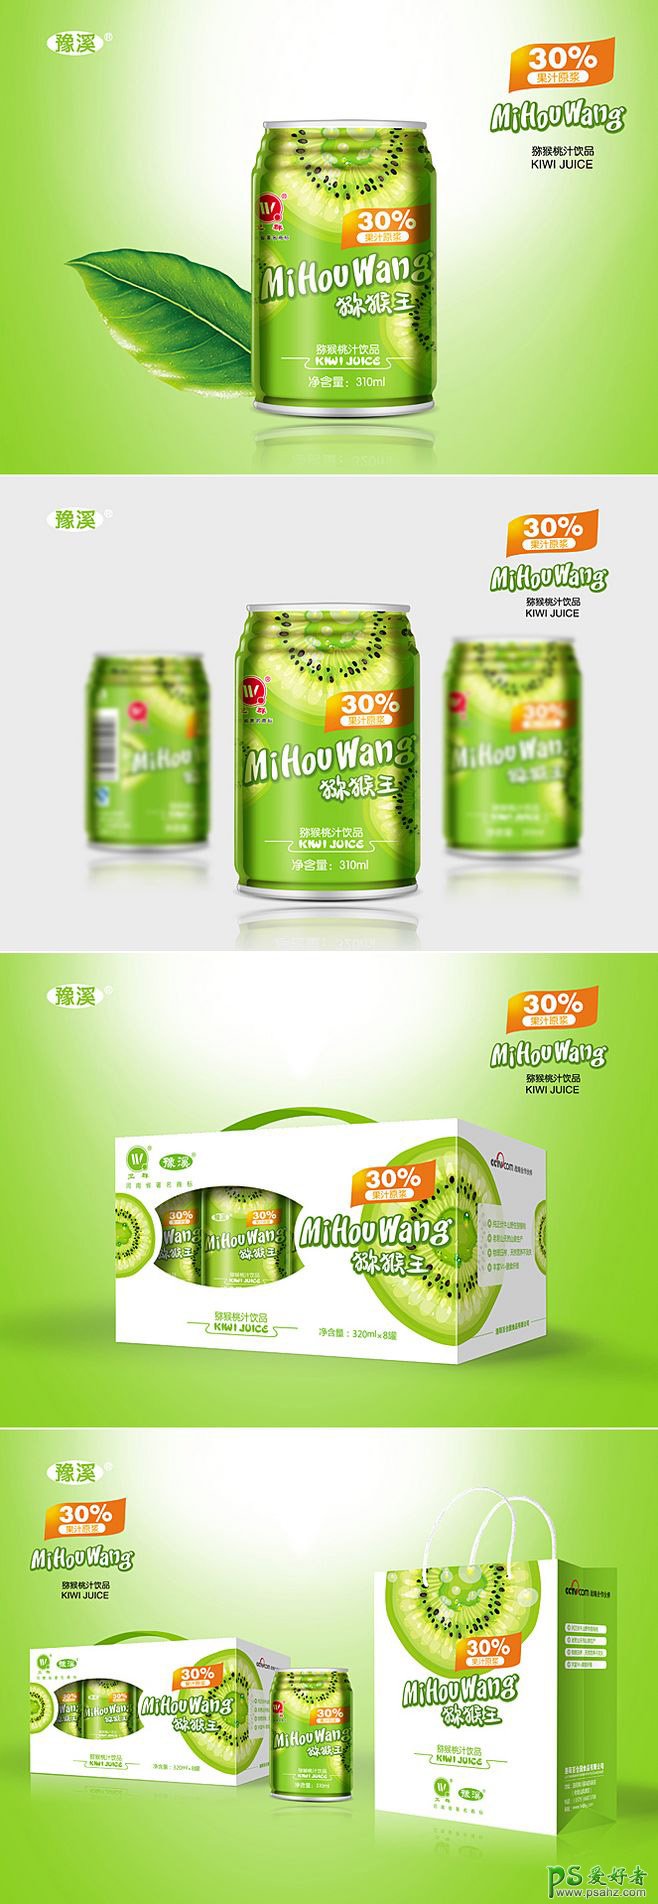 猕猴桃饮料外包装作品欣赏 绿色清新果汁饮料包装设计作品